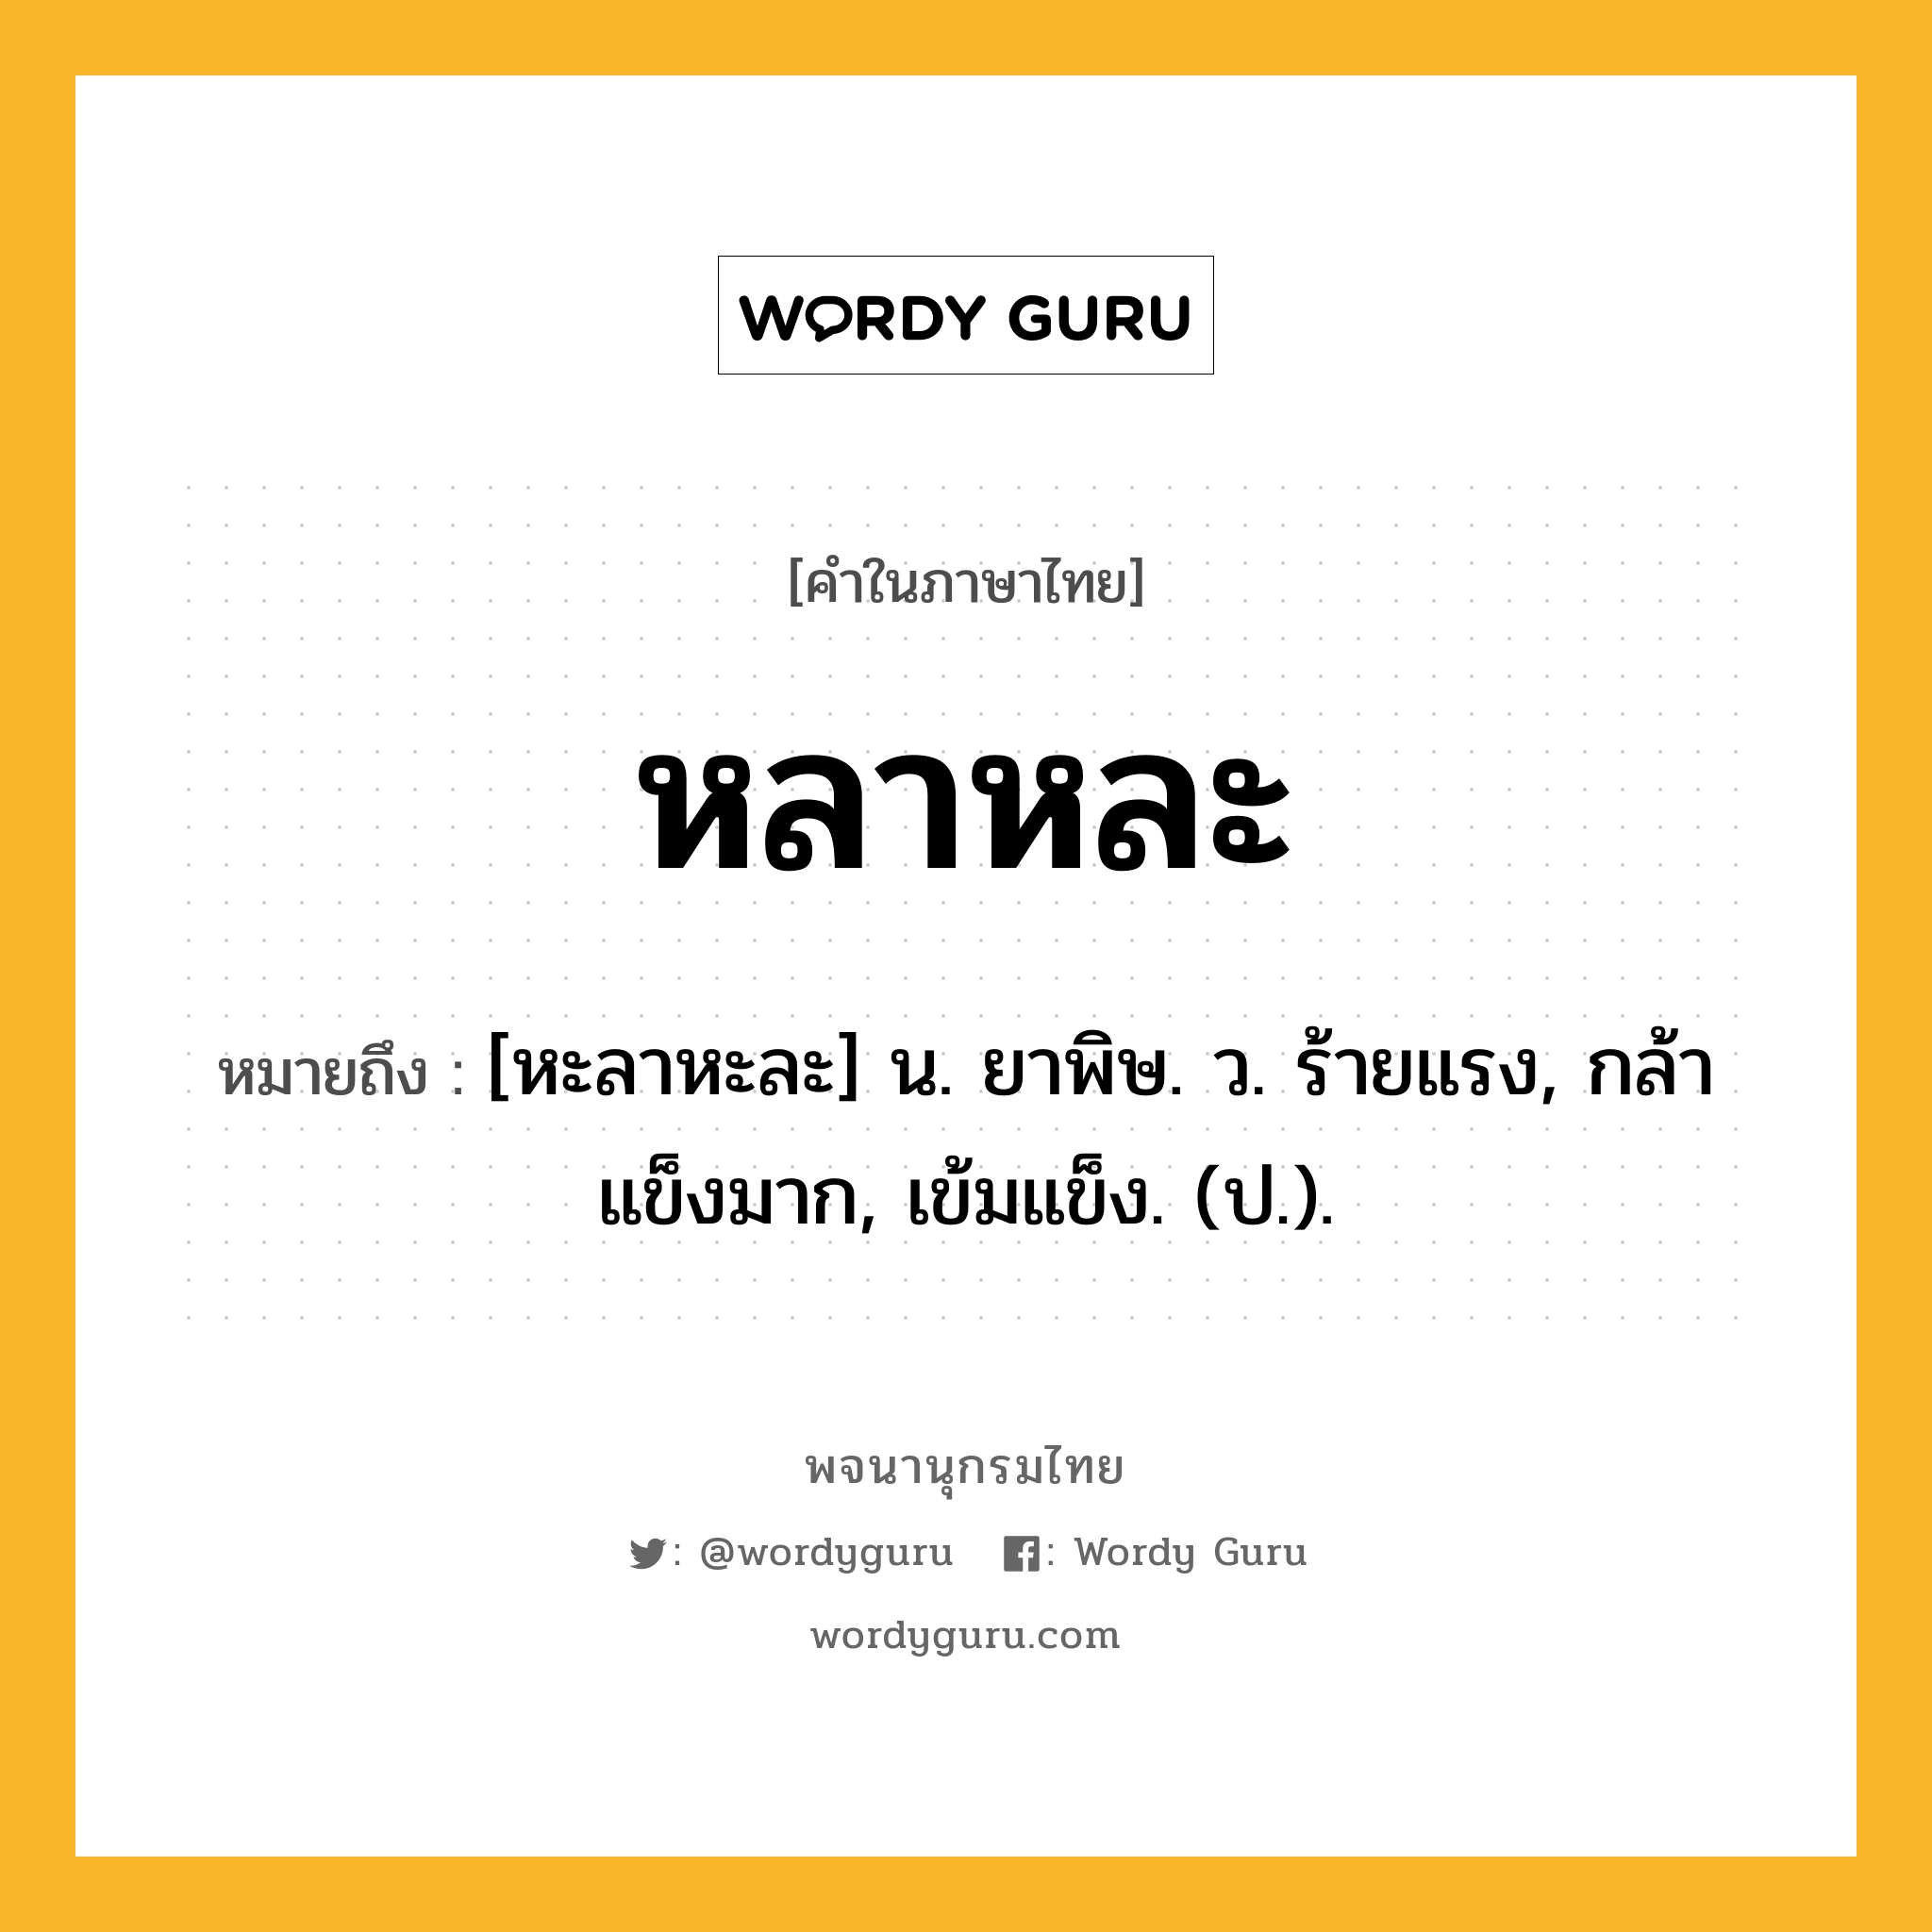 หลาหละ ความหมาย หมายถึงอะไร?, คำในภาษาไทย หลาหละ หมายถึง [หะลาหะละ] น. ยาพิษ. ว. ร้ายแรง, กล้าแข็งมาก, เข้มแข็ง. (ป.).